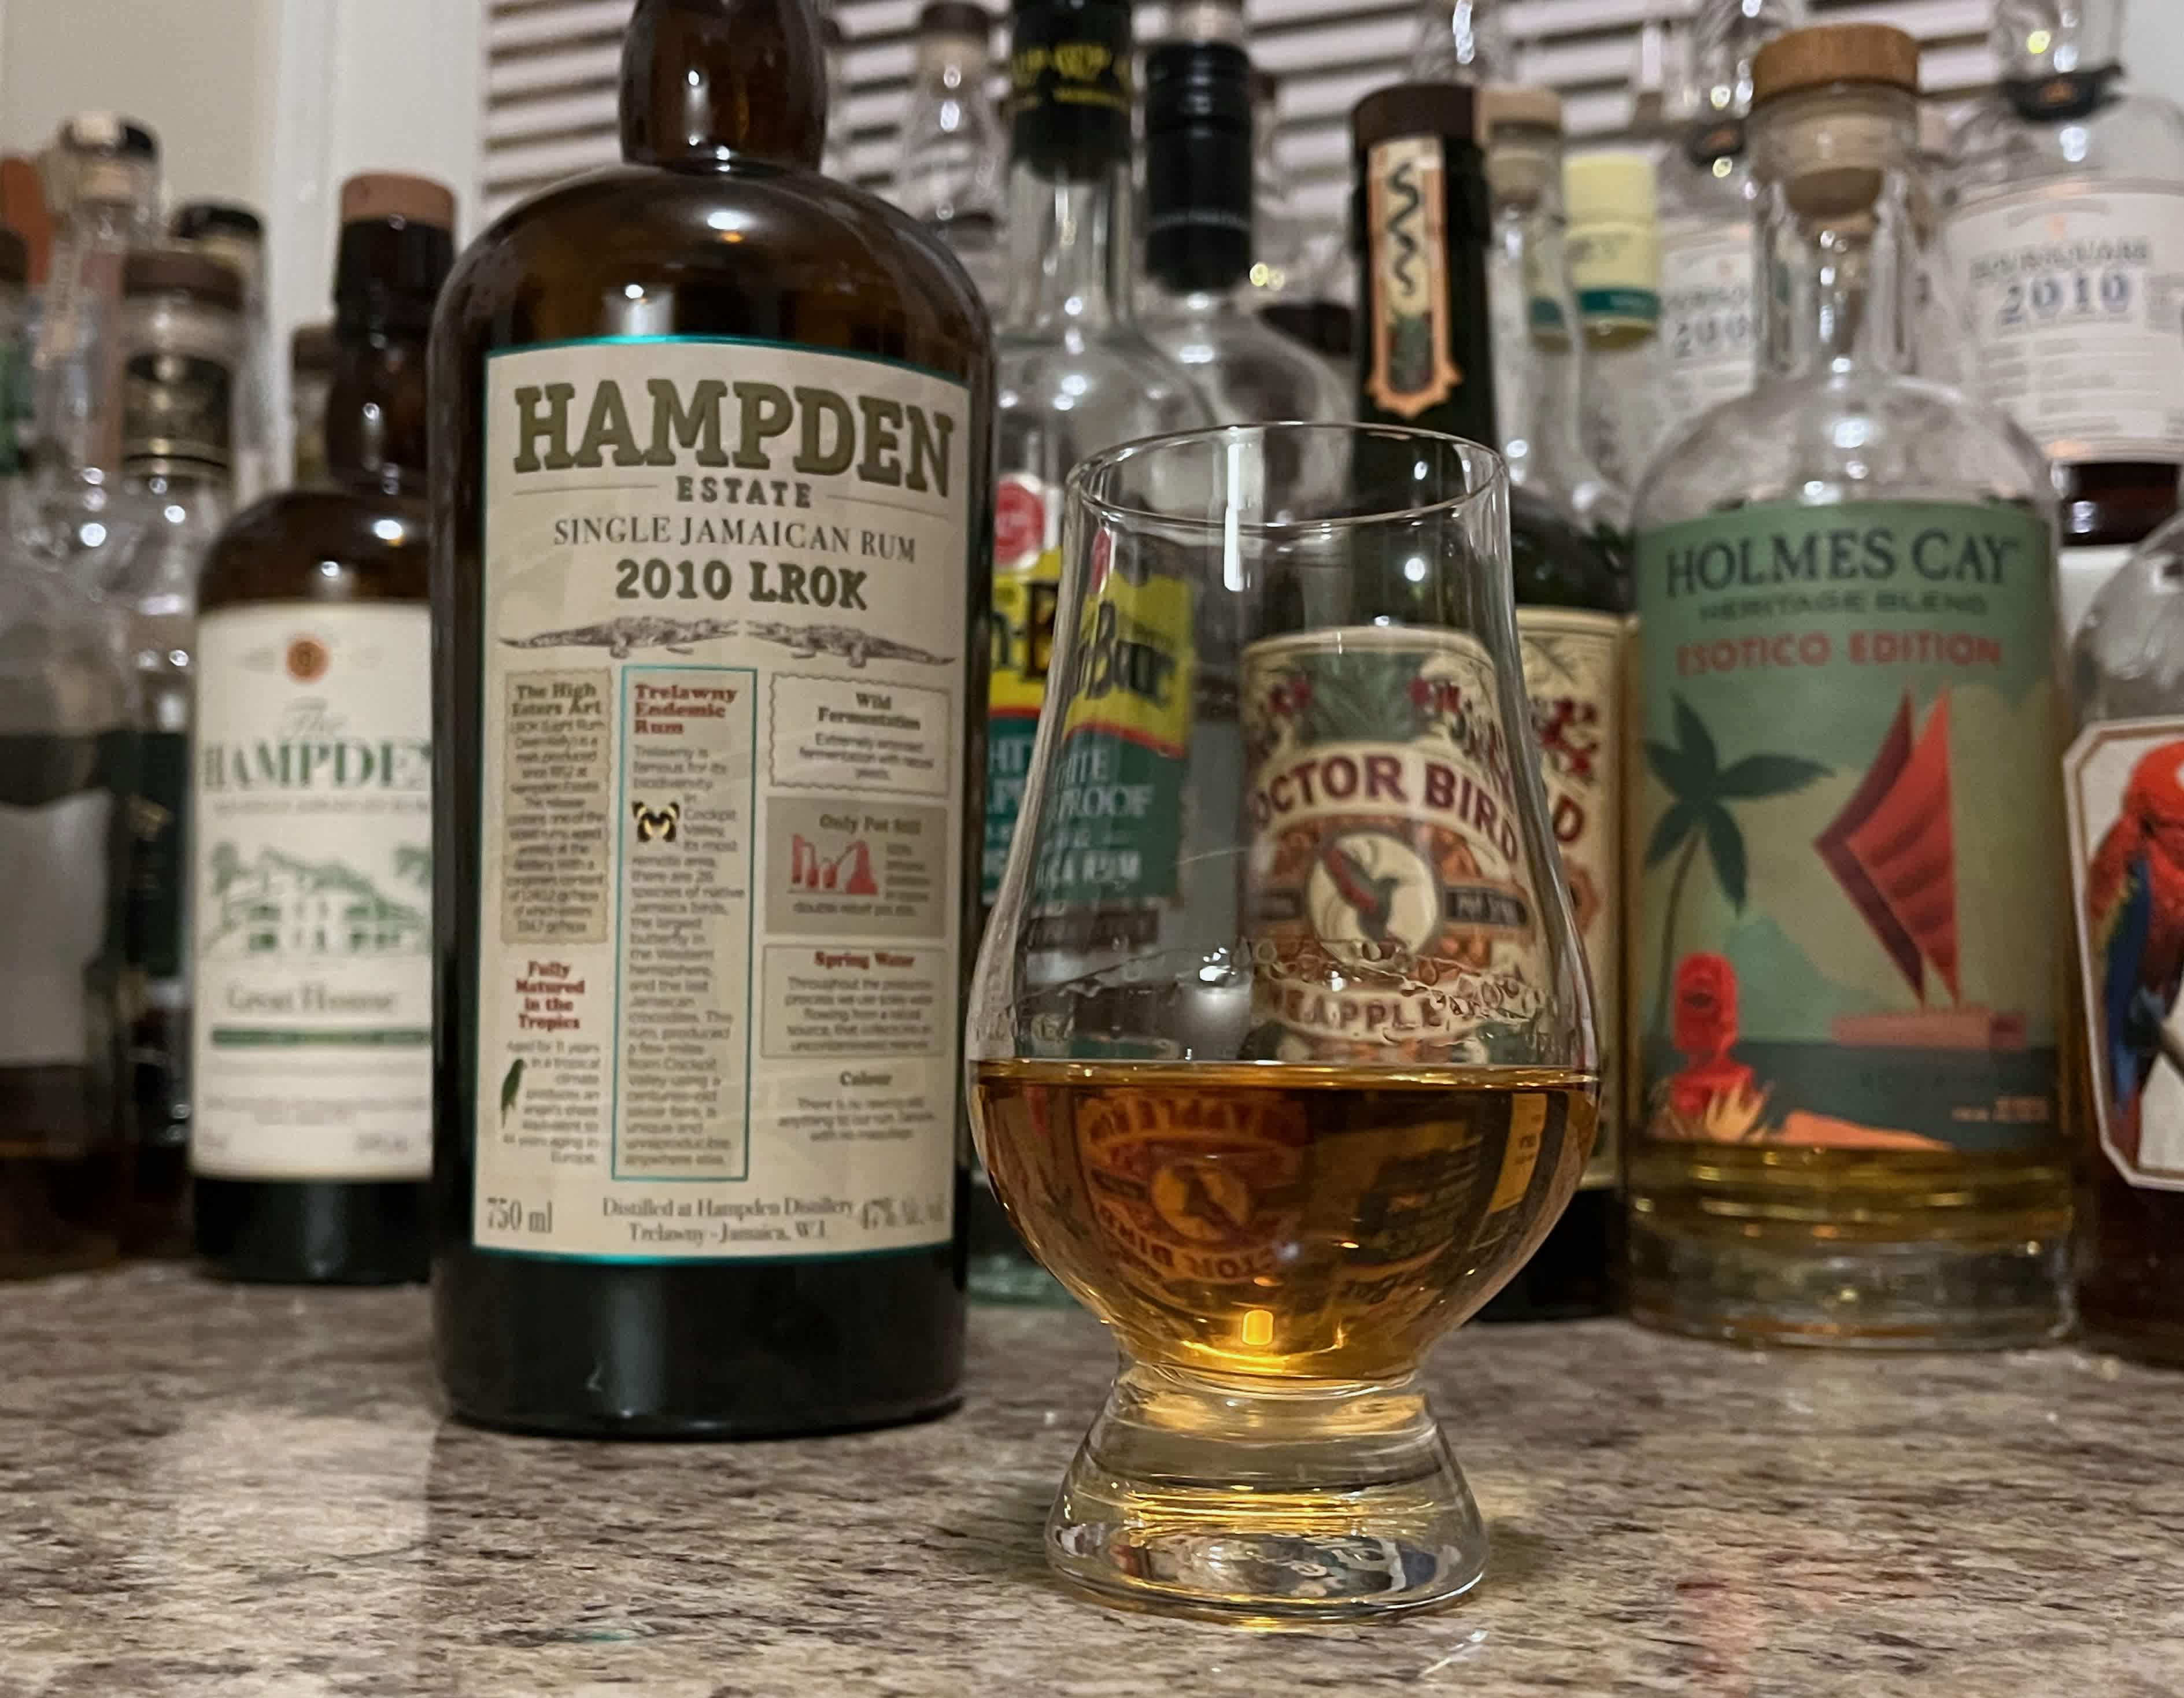 A bottle of Hampden 2010 LROK next to a glencairn of rum on a kitchen counter